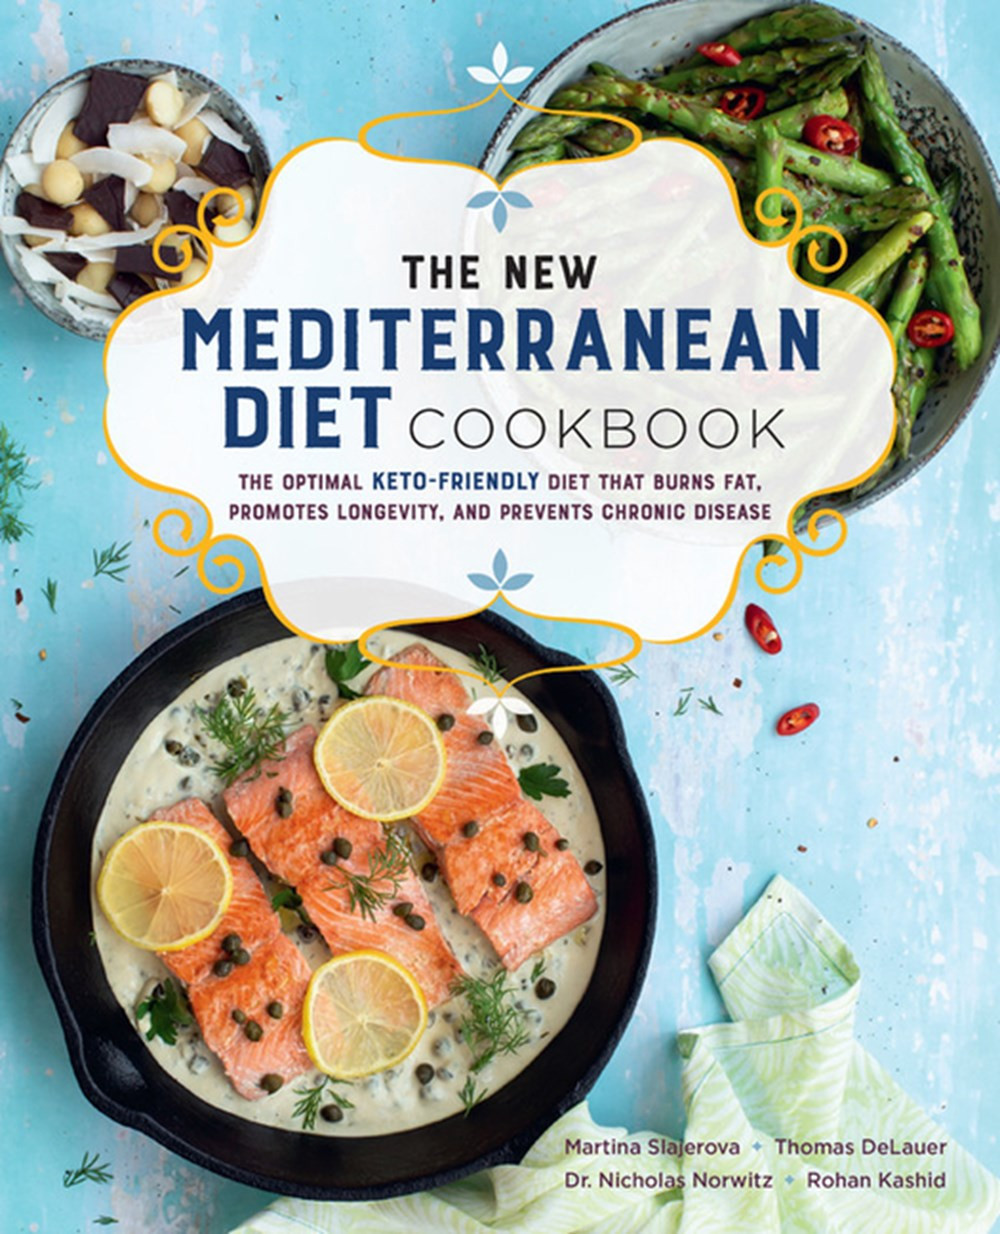 The New Mediterranean Diet Cookbook Fresh Buy the New Mediterranean Diet Cookbook the Optimal Keto